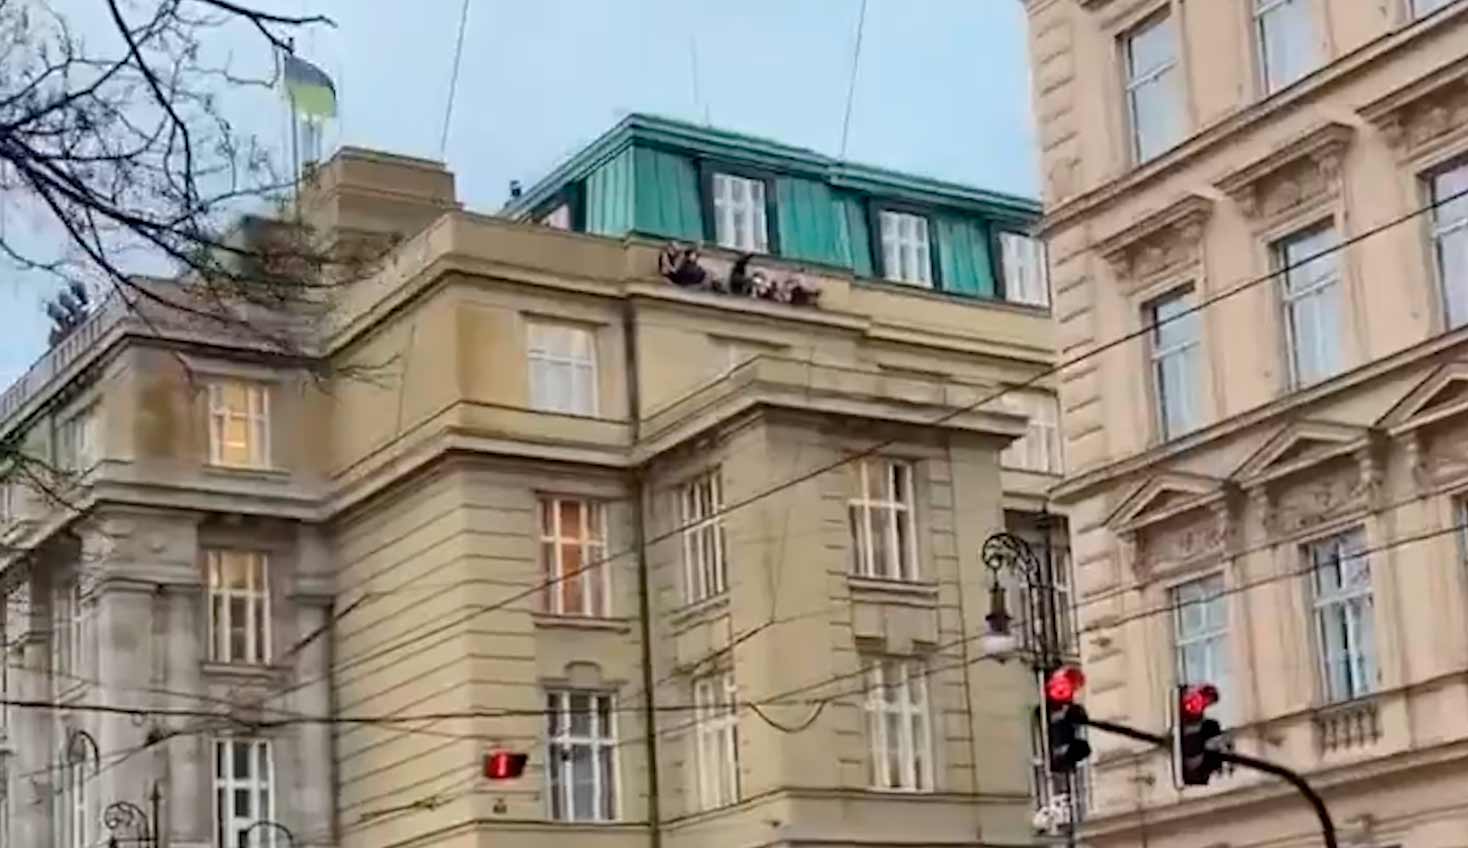 Ampuminen Prahan yliopistolla vaatii 11 kuolonuhria ampumahetken jälkeen. Kuvat ja video: Twitter @BabakTaghvaee1